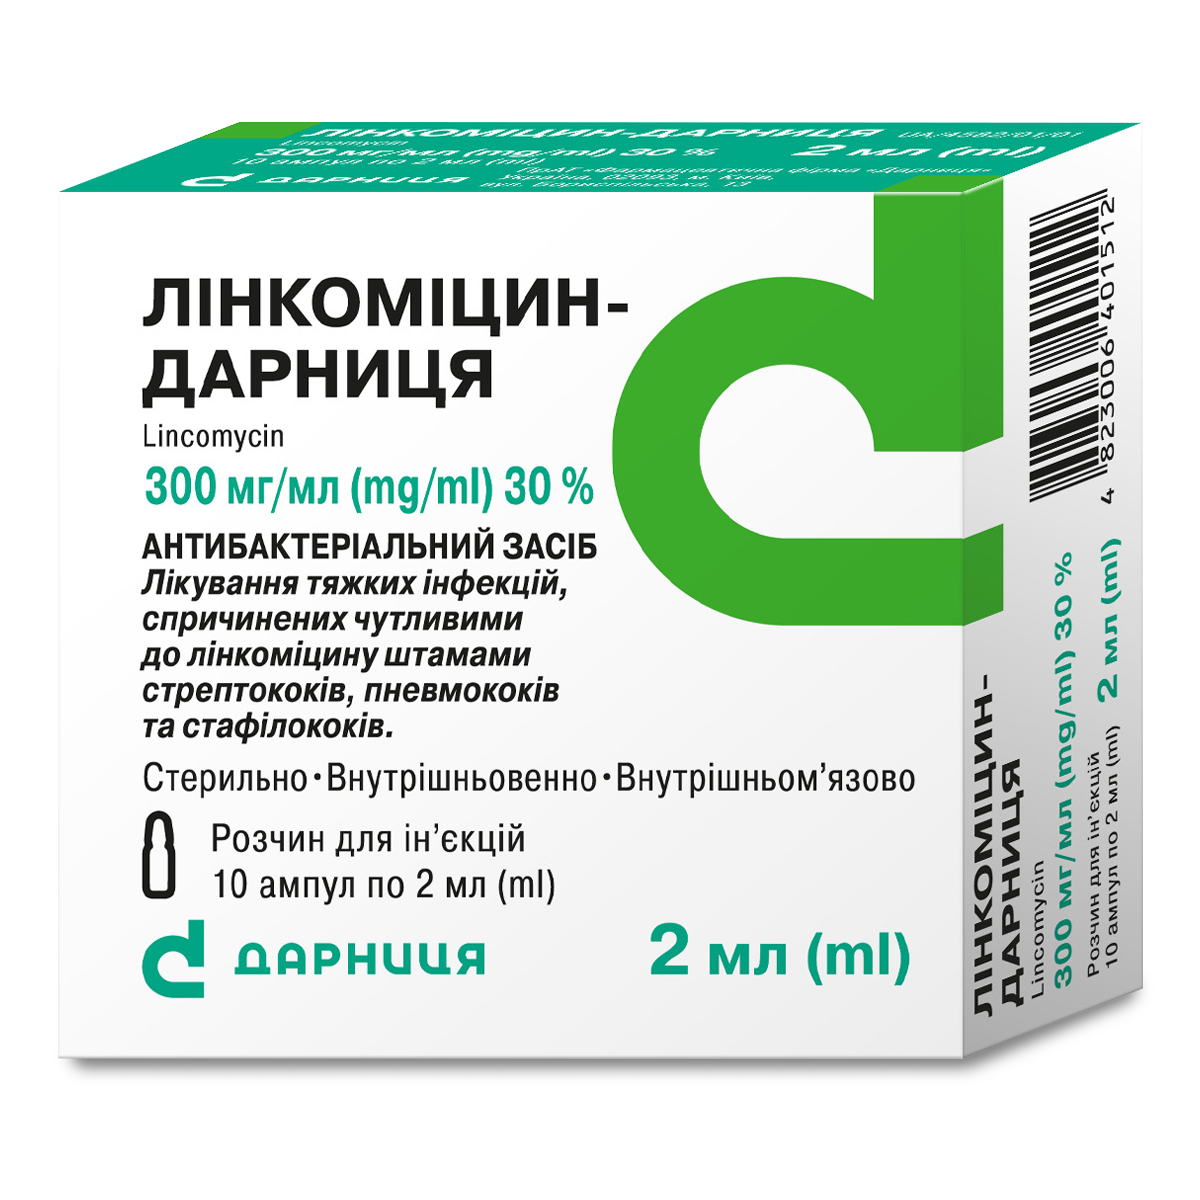 Lincomycin-Darnitsa